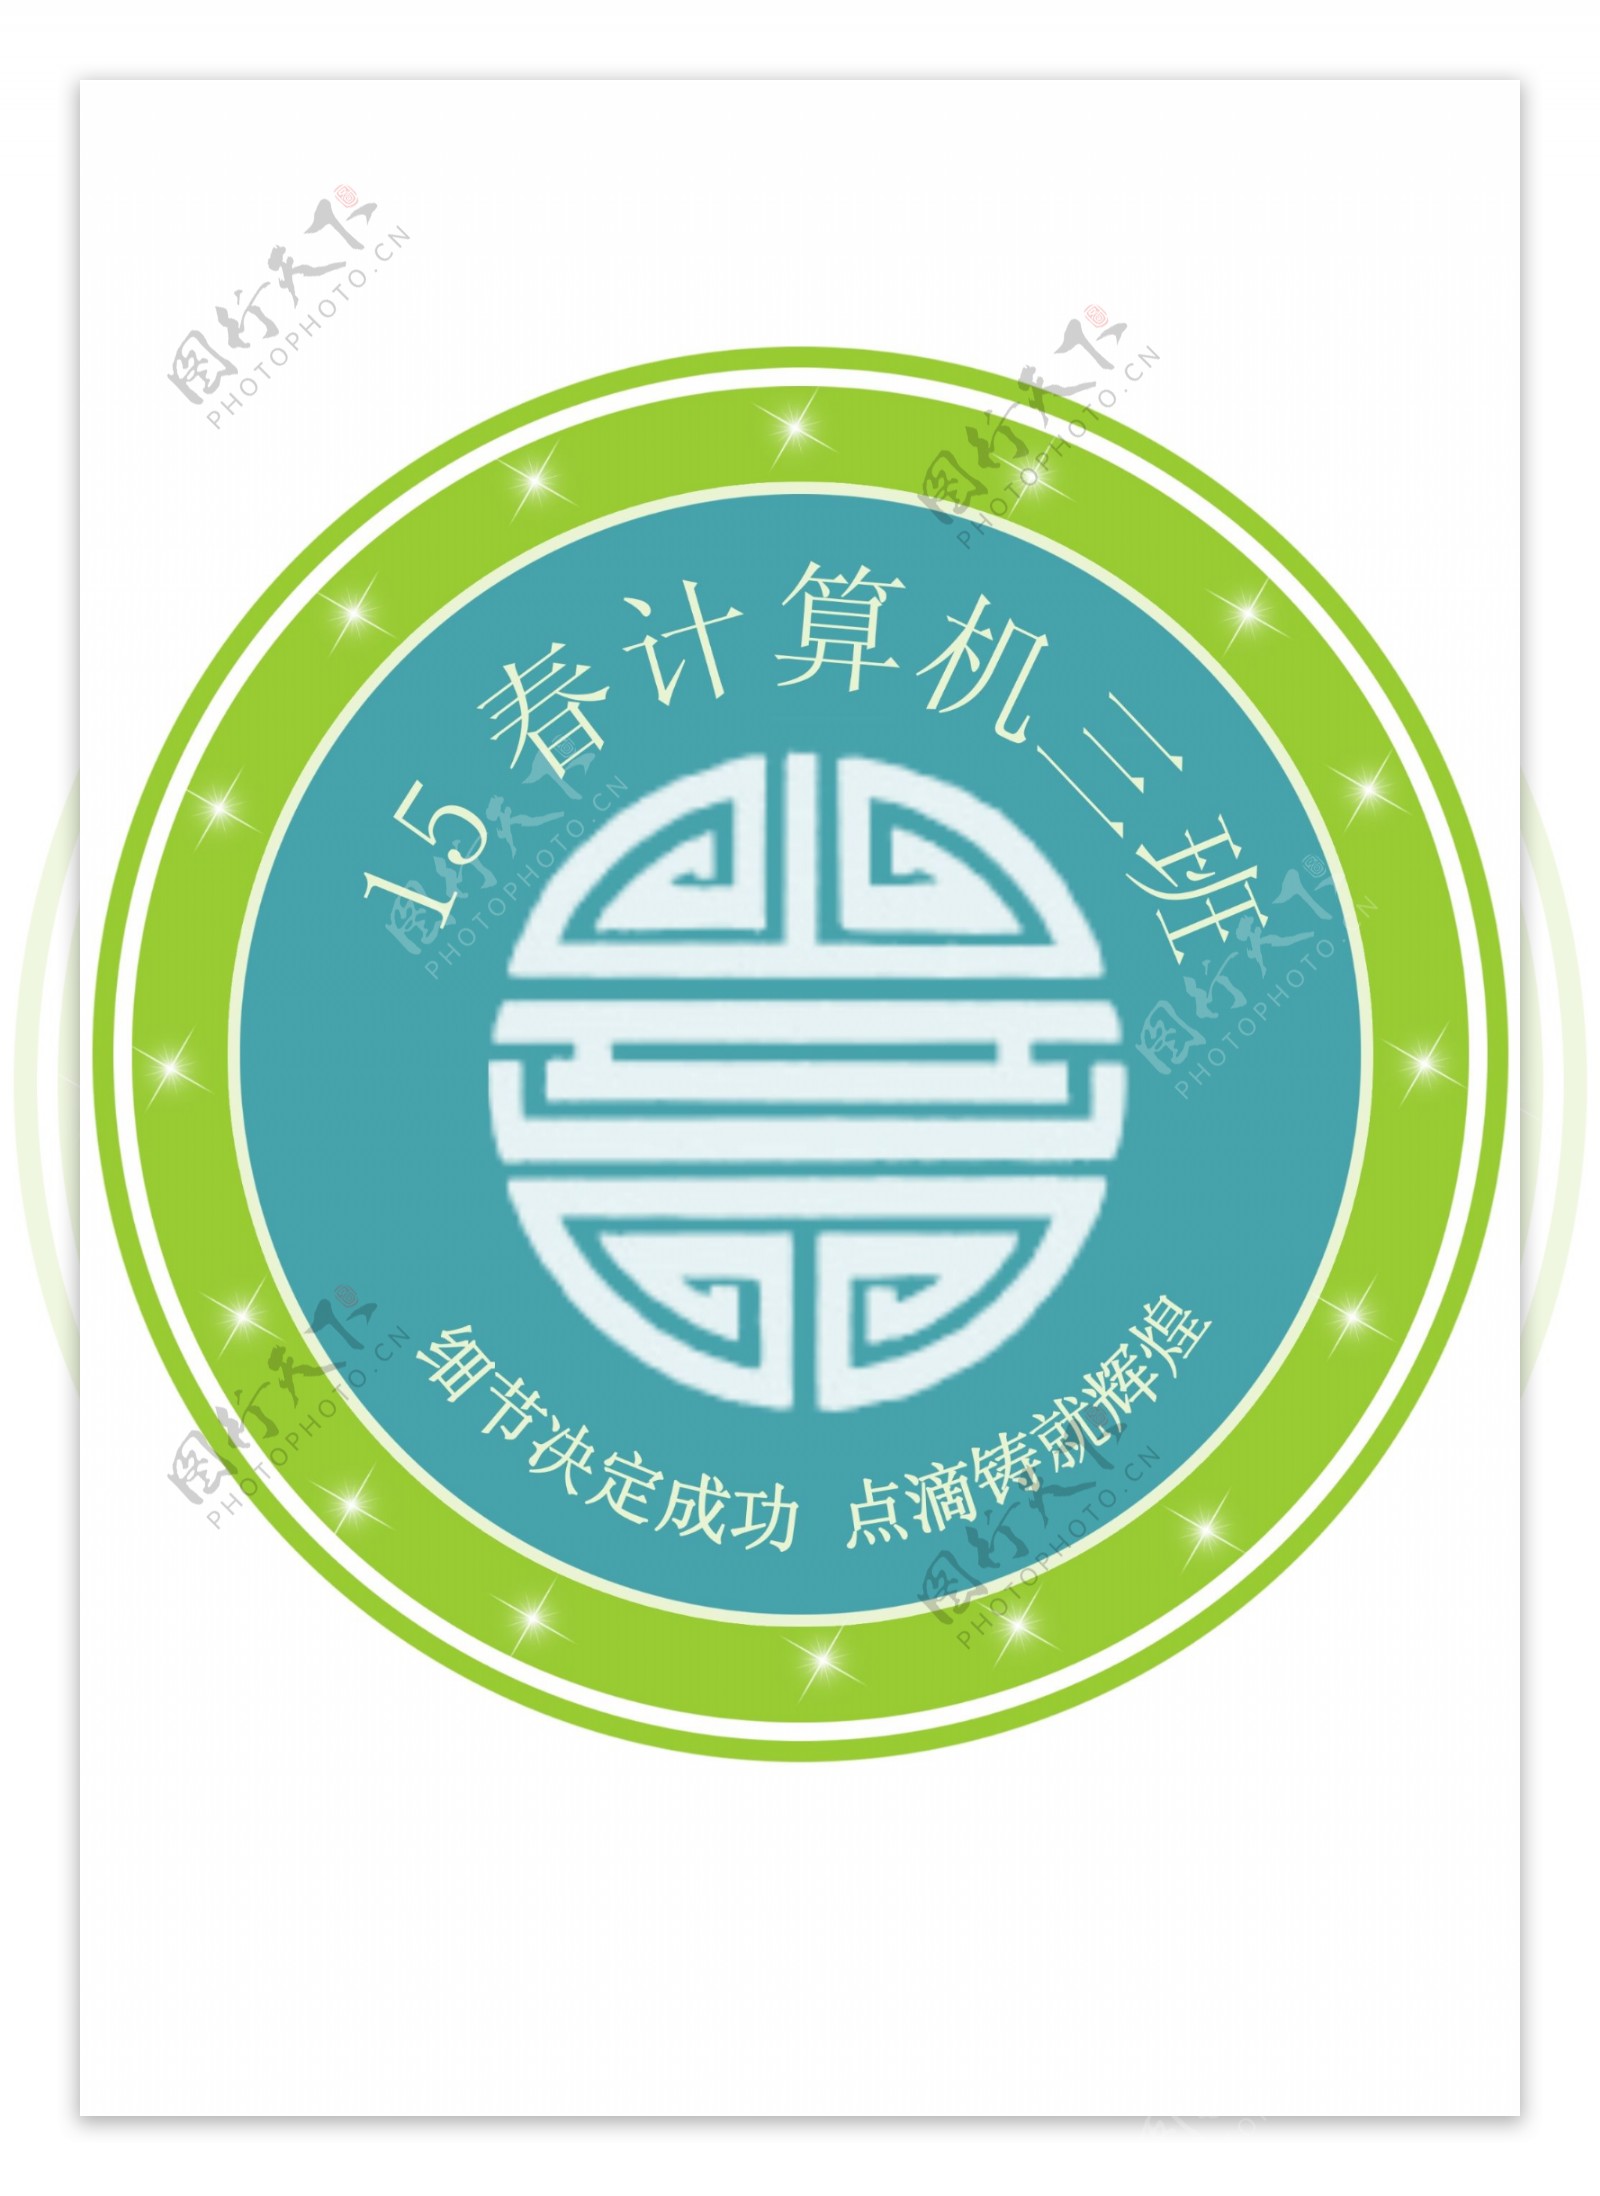 计算机班专业logo班徽